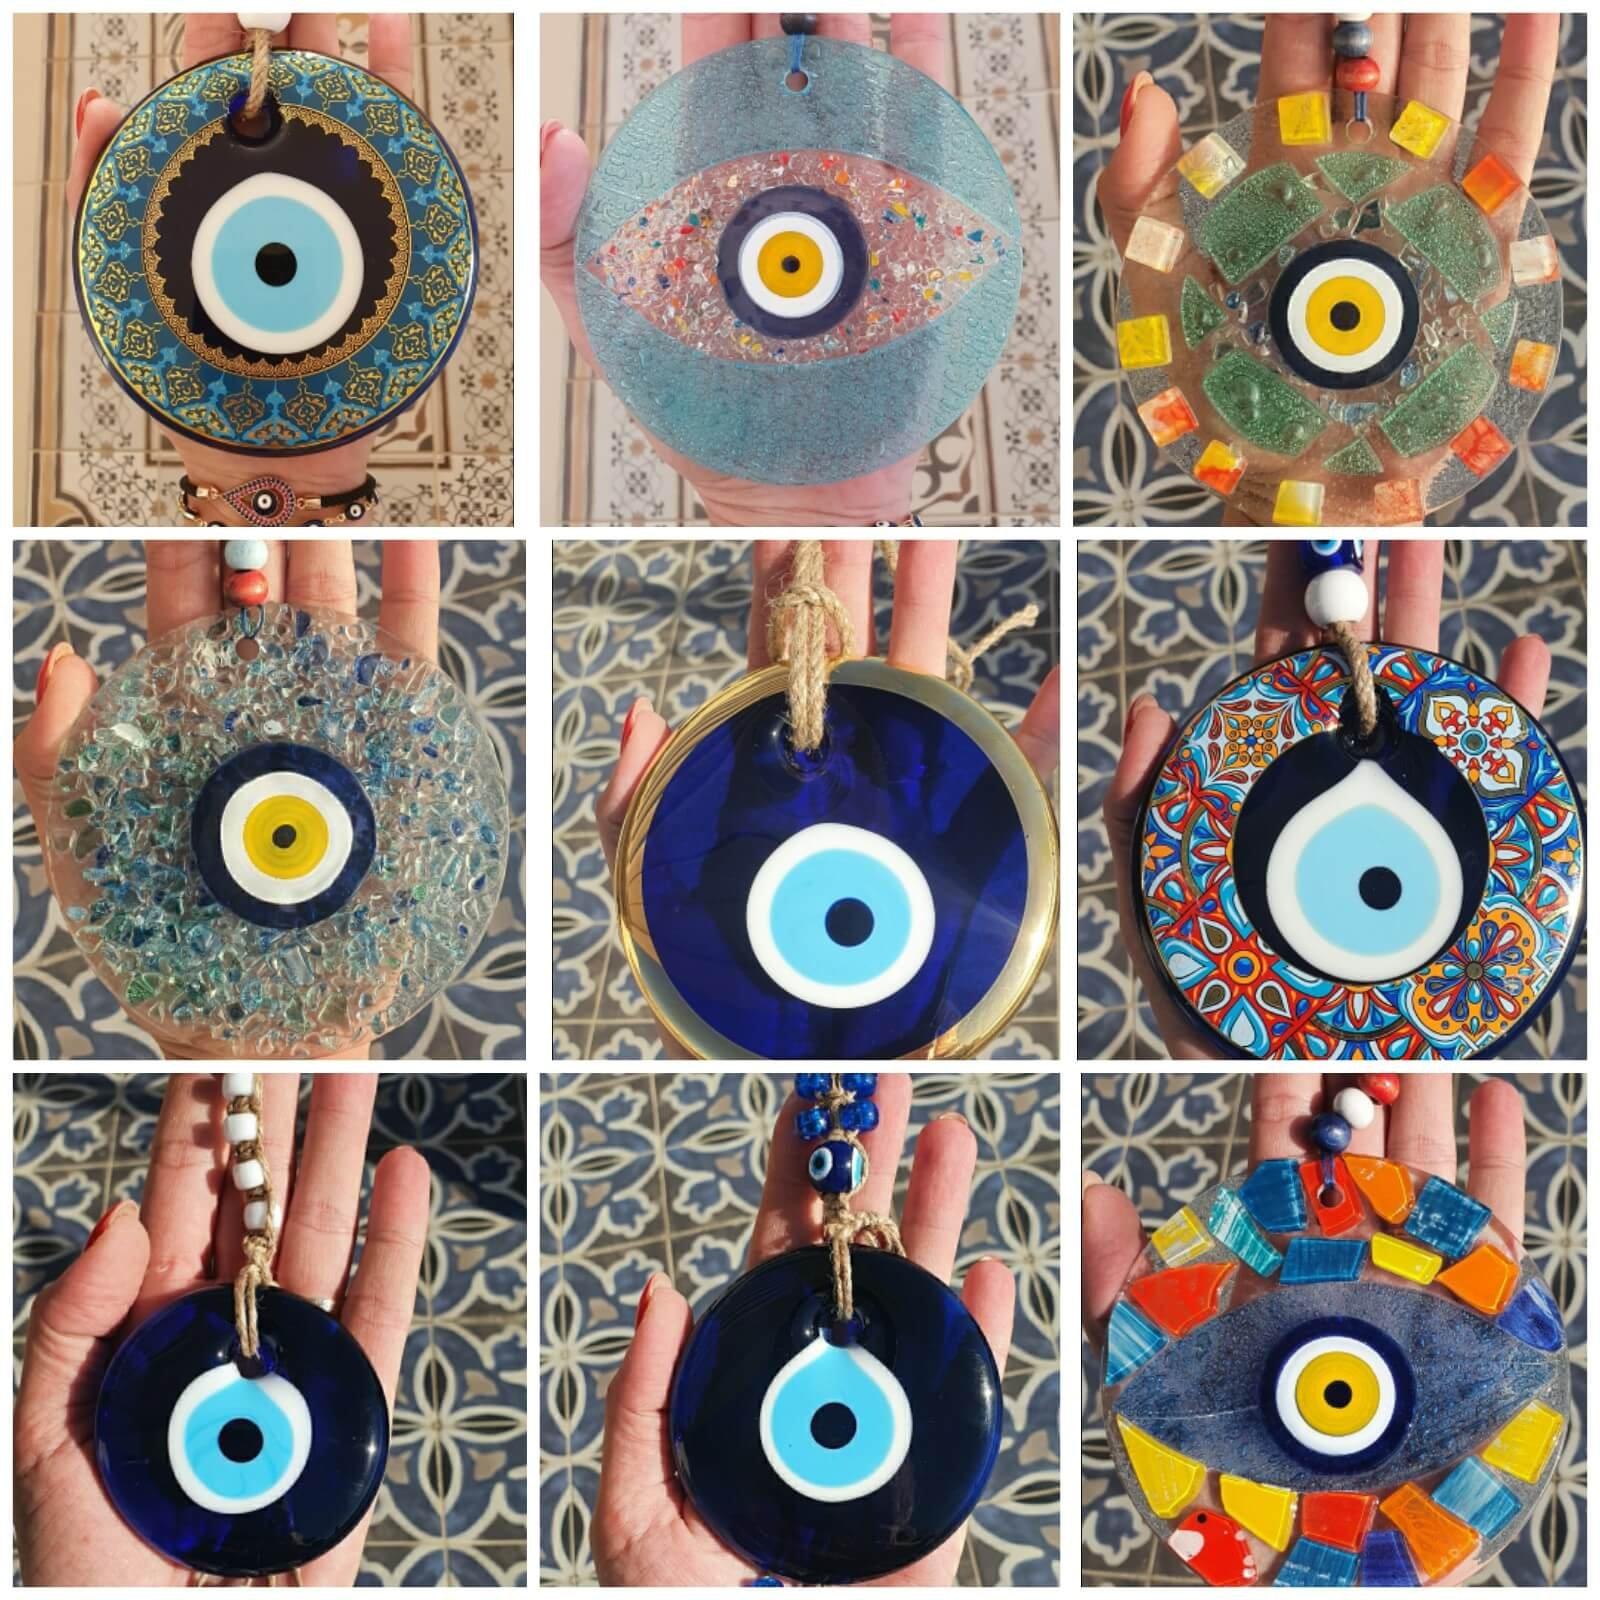 תכשיטים עם עין כחולה נגד עין הרע דידי דיזיין הסטודיו של לימור לרבוני-גילעדי